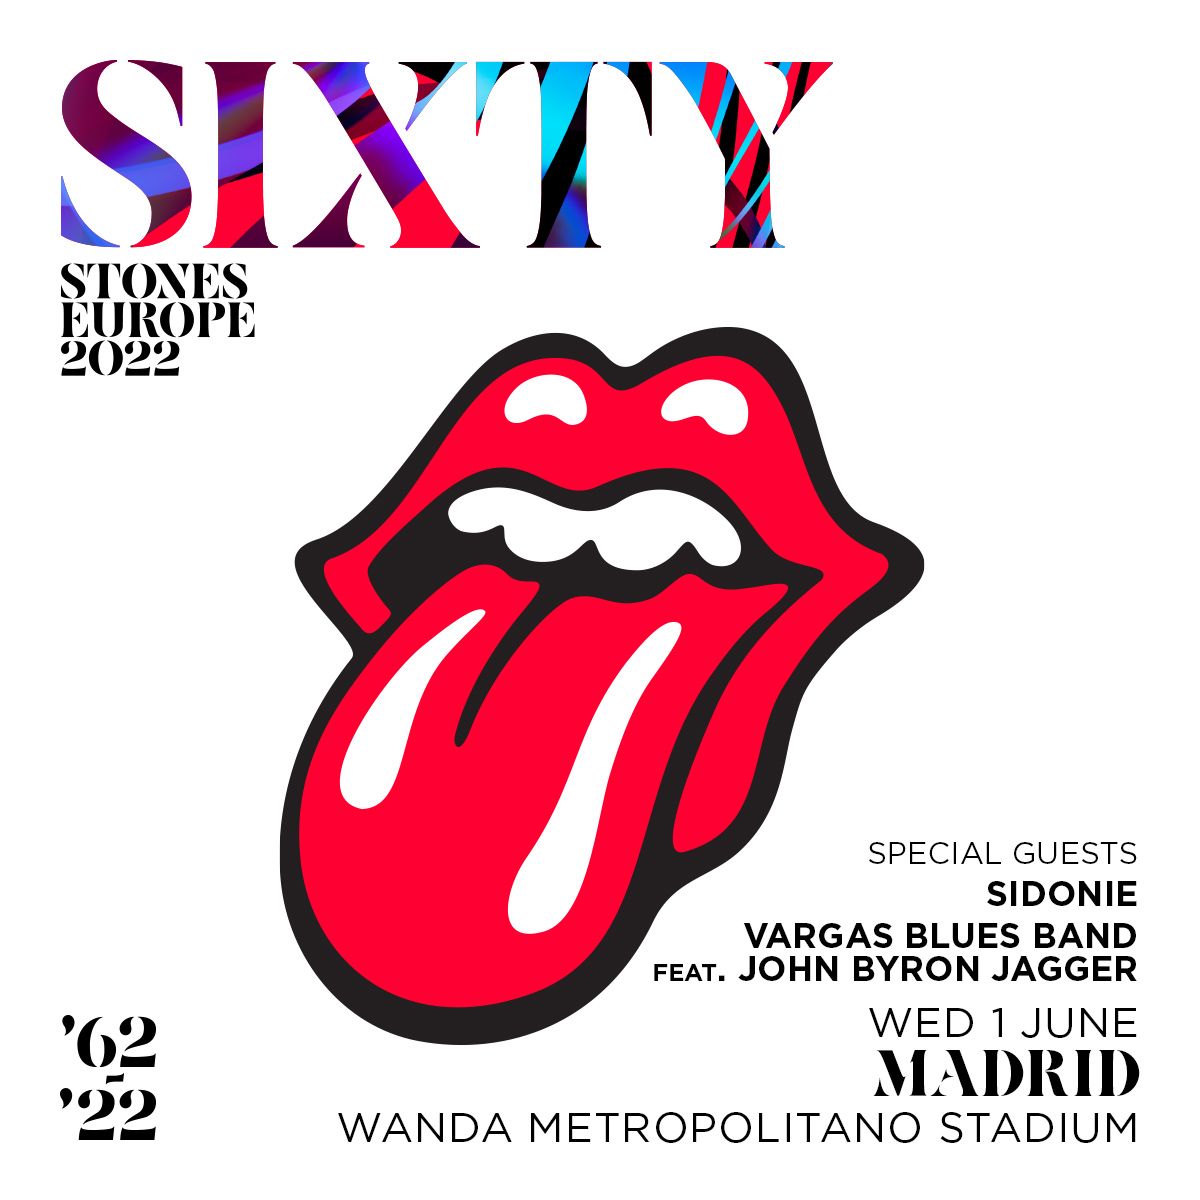 Sidonie y Vargas Blues Band feat. John Byron Jagger abrirán para los Rolling Stones en Madrid